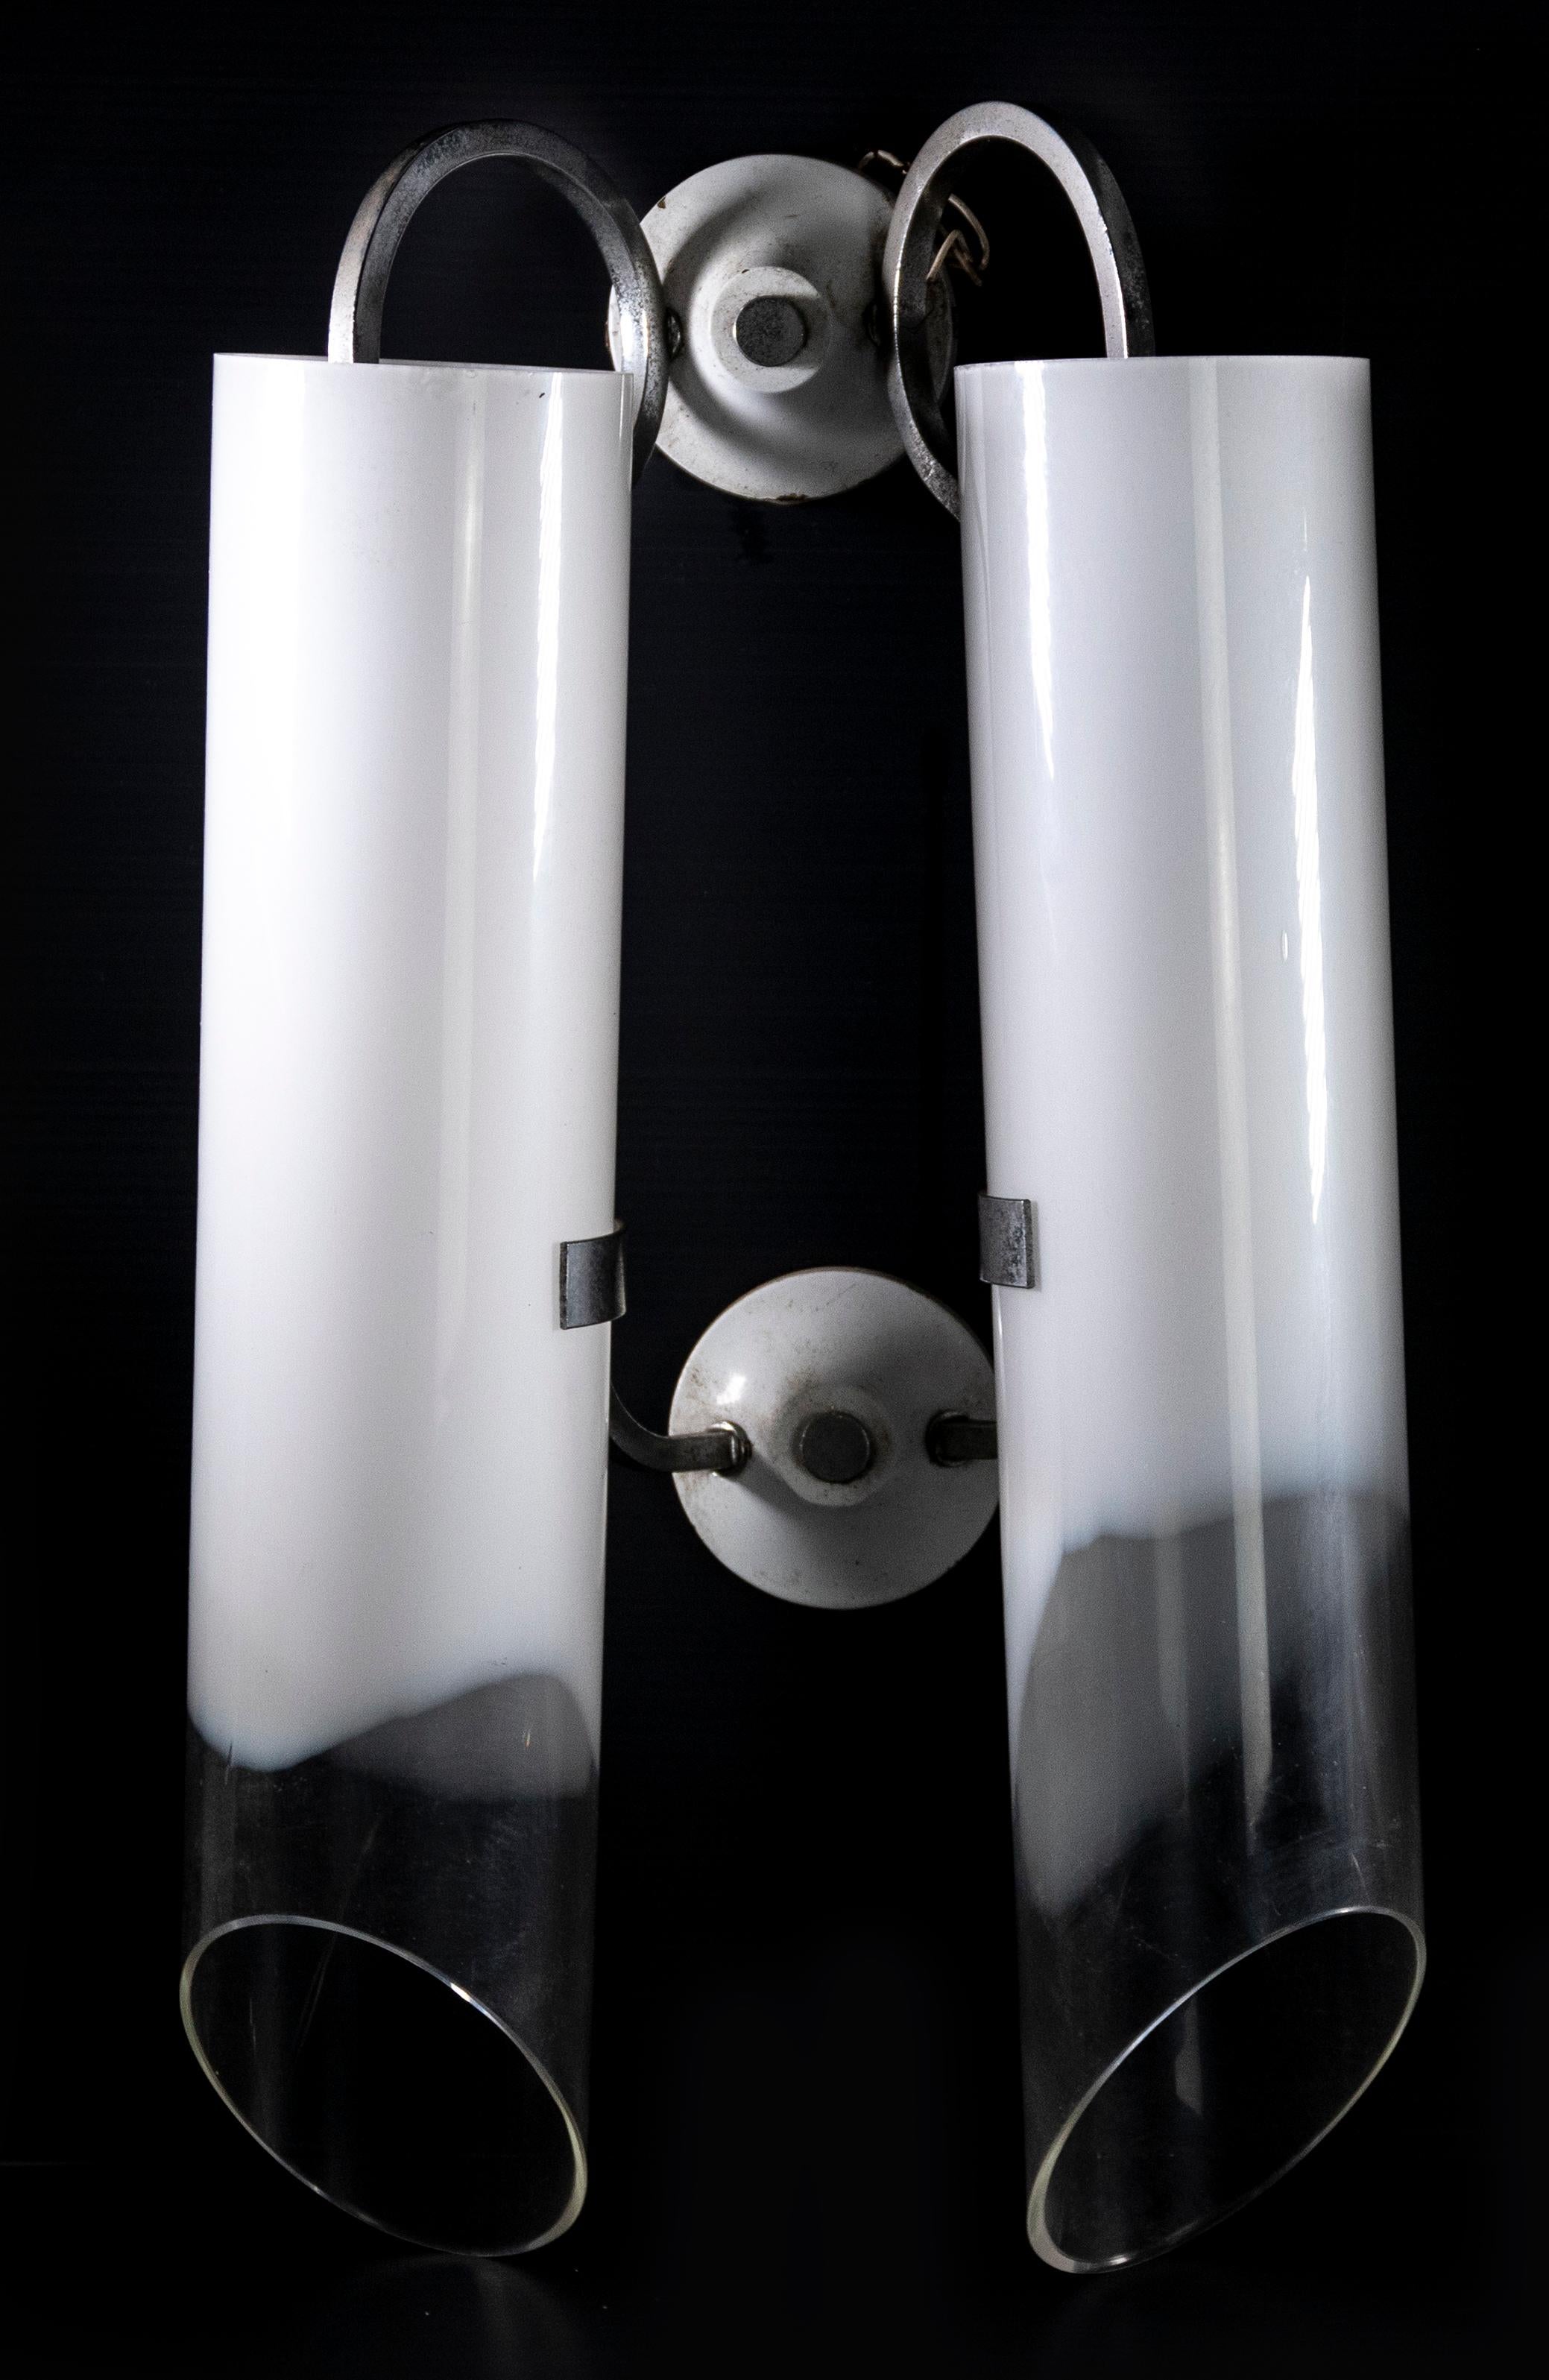 Paar von Applique-Leuchten ist ein Original-Design-Lampe in der Hälfte der 1970er Jahre von Carlo Nason realisiert

Ein elegantes Paar von applique Licht realisiert in weißem Glas für Mazzega.

Carlo Nason (1935 in Murano geboren) ist ein